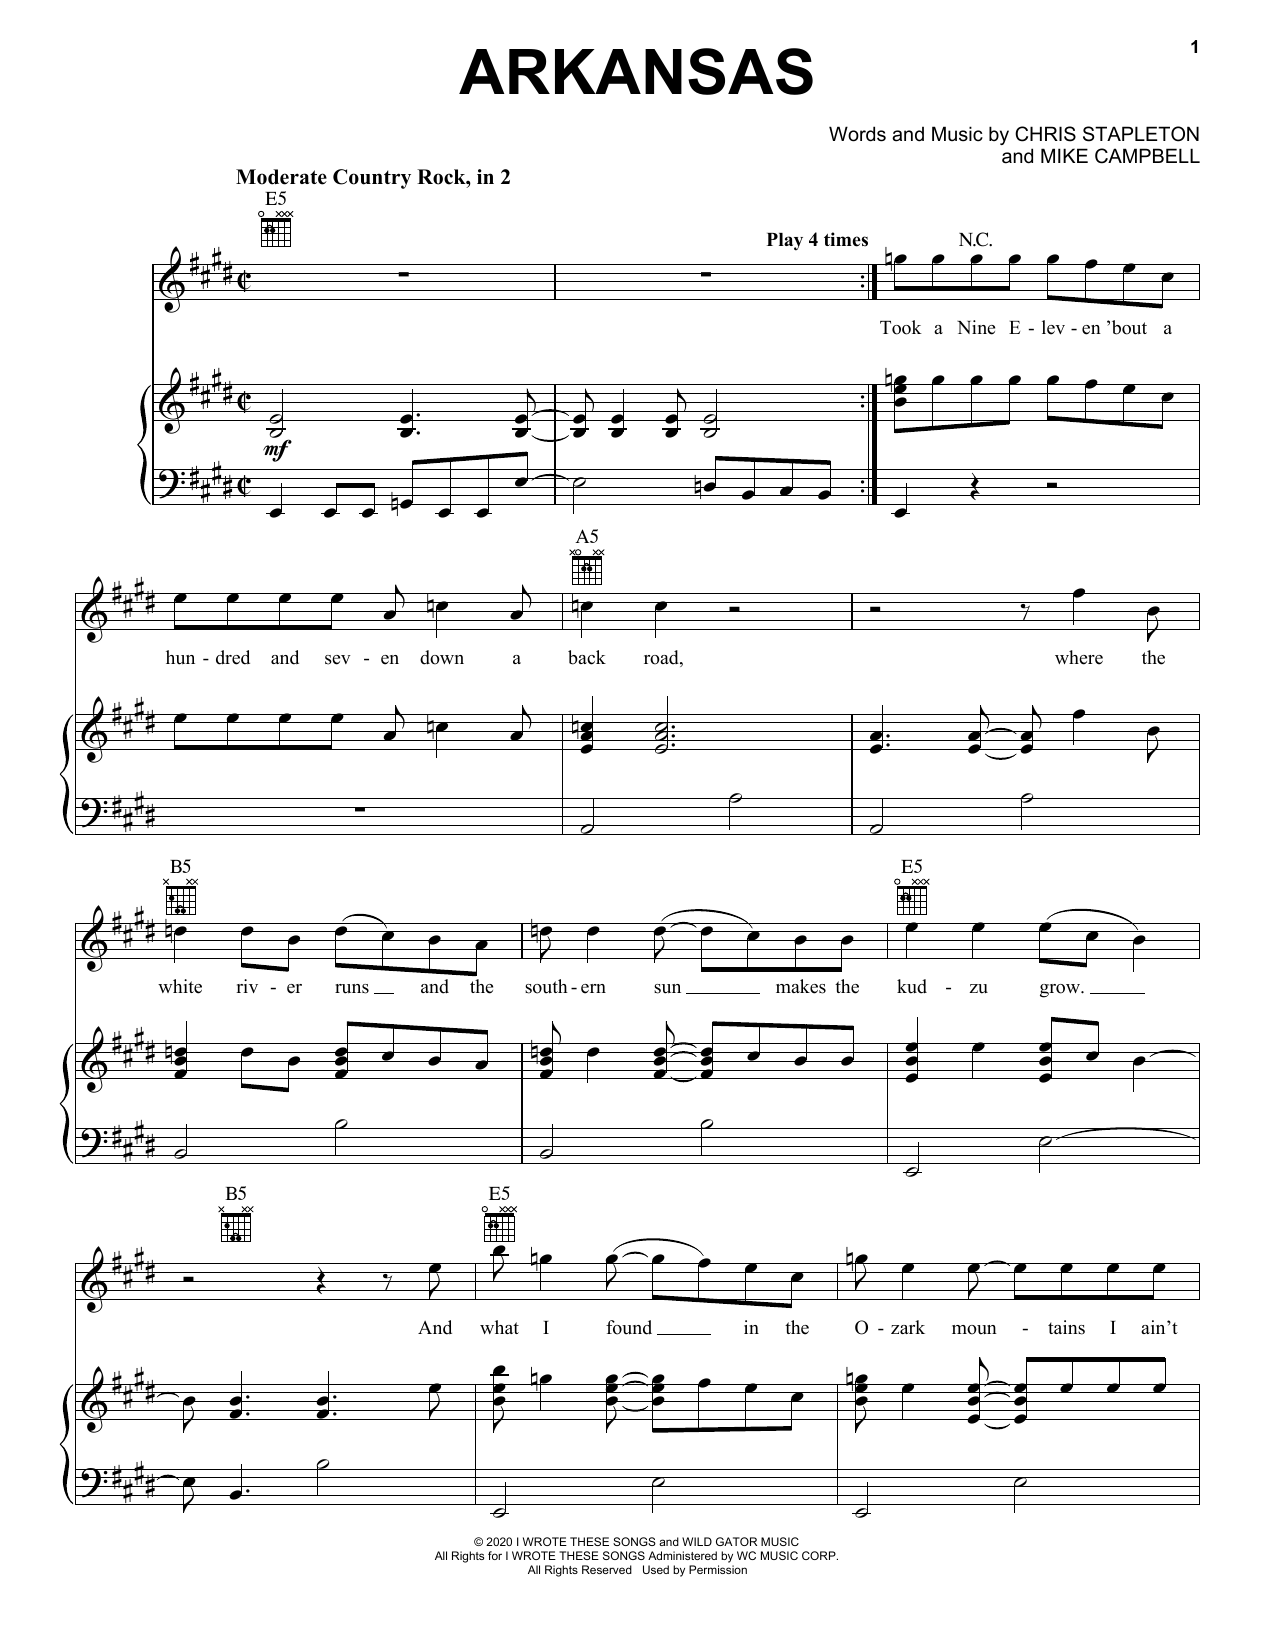 Chris Stapleton Arkansas Sheet Music Notes & Chords for Guitar Chords/Lyrics - Download or Print PDF